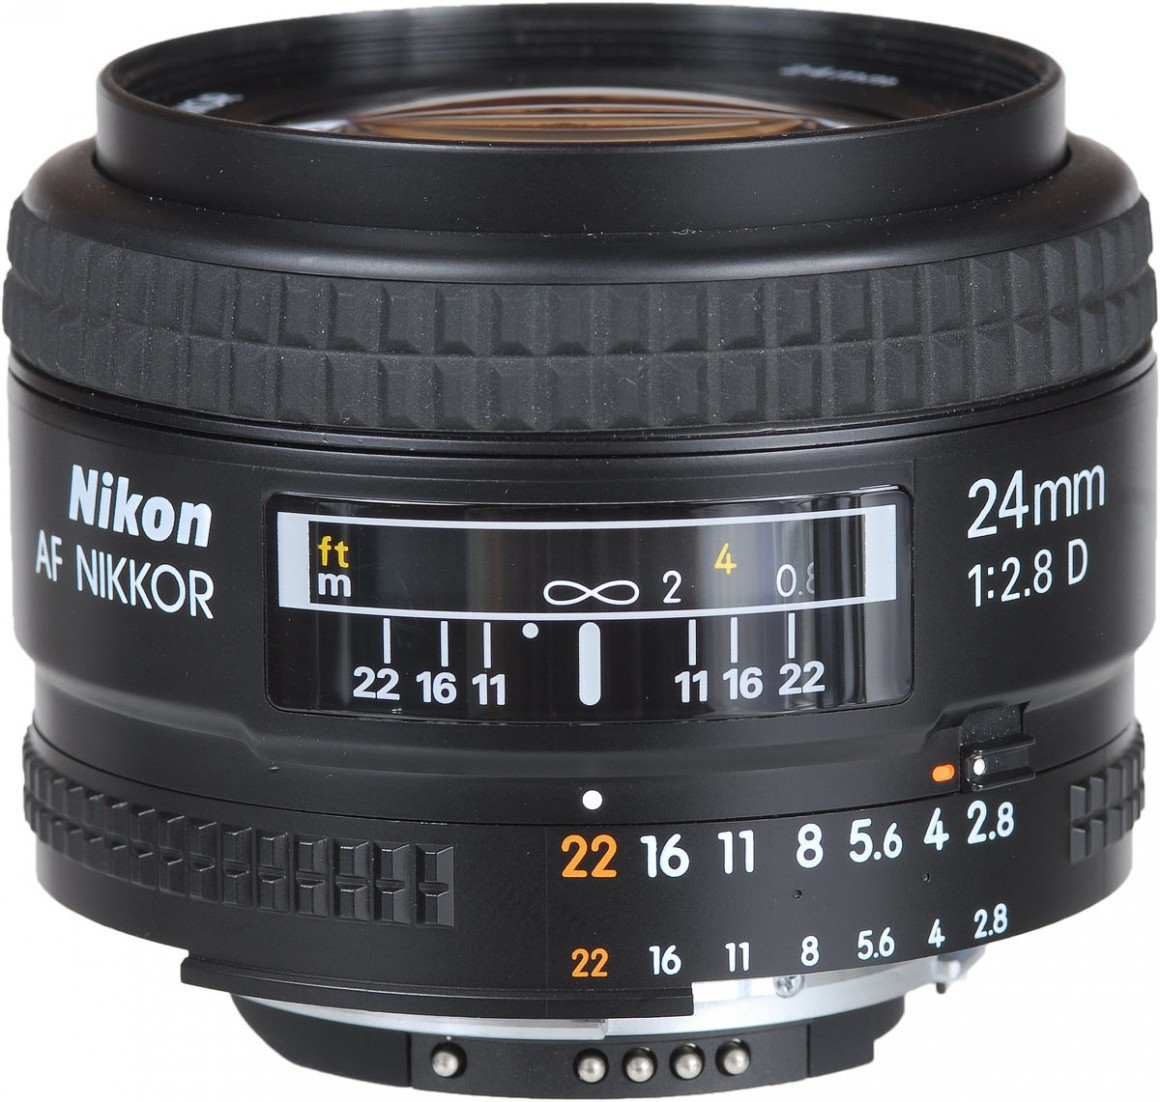 Nikon AF NIKKOR 24mm F/2.8D | LENS-DB.COM